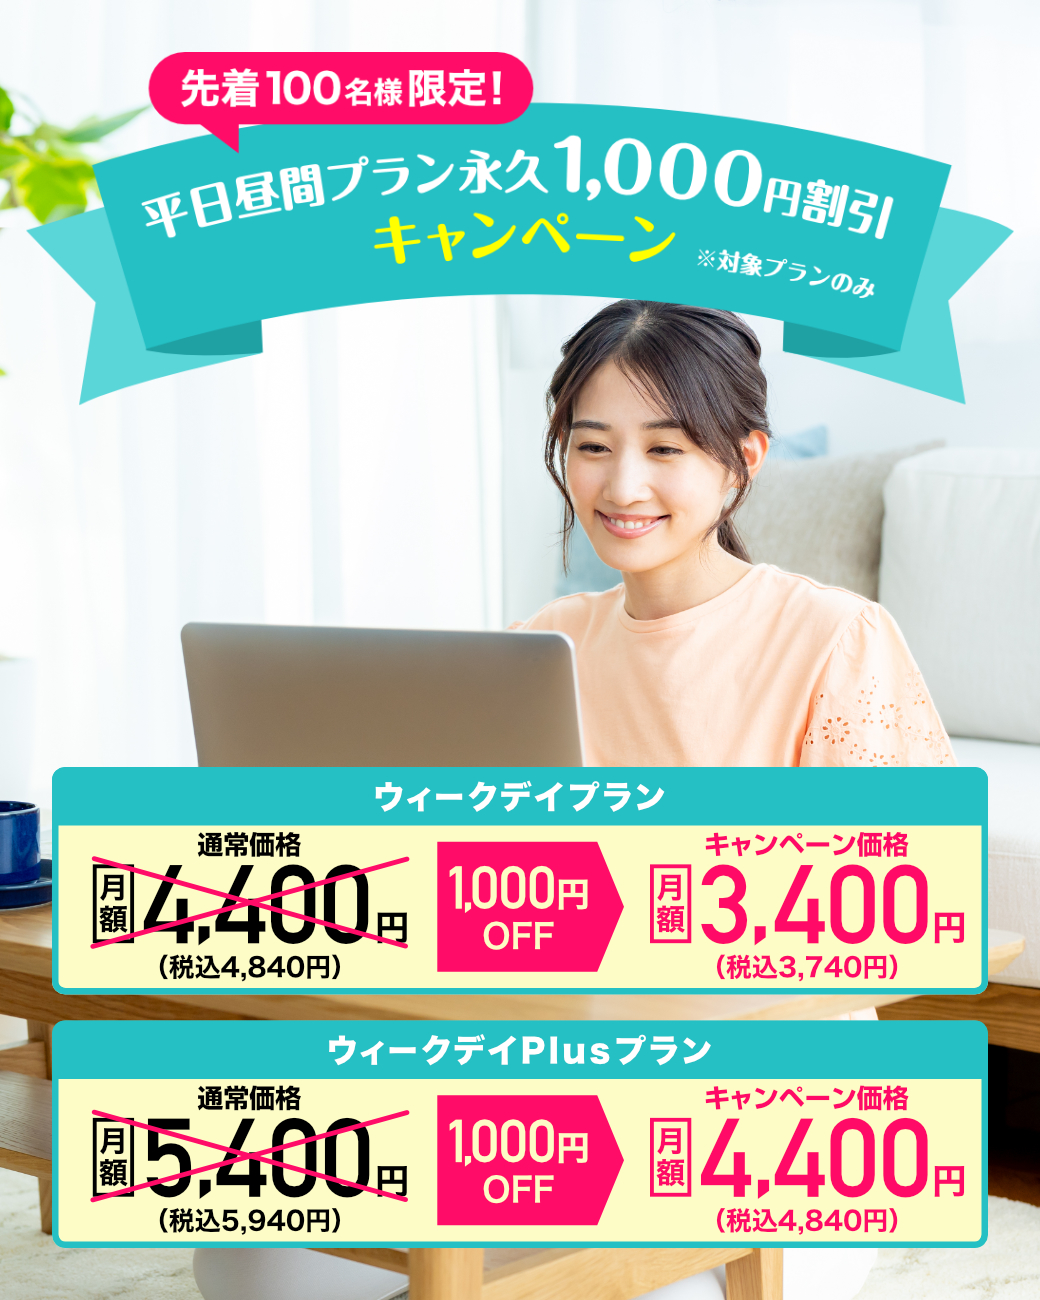 永久1,000円OFFキャンペーン